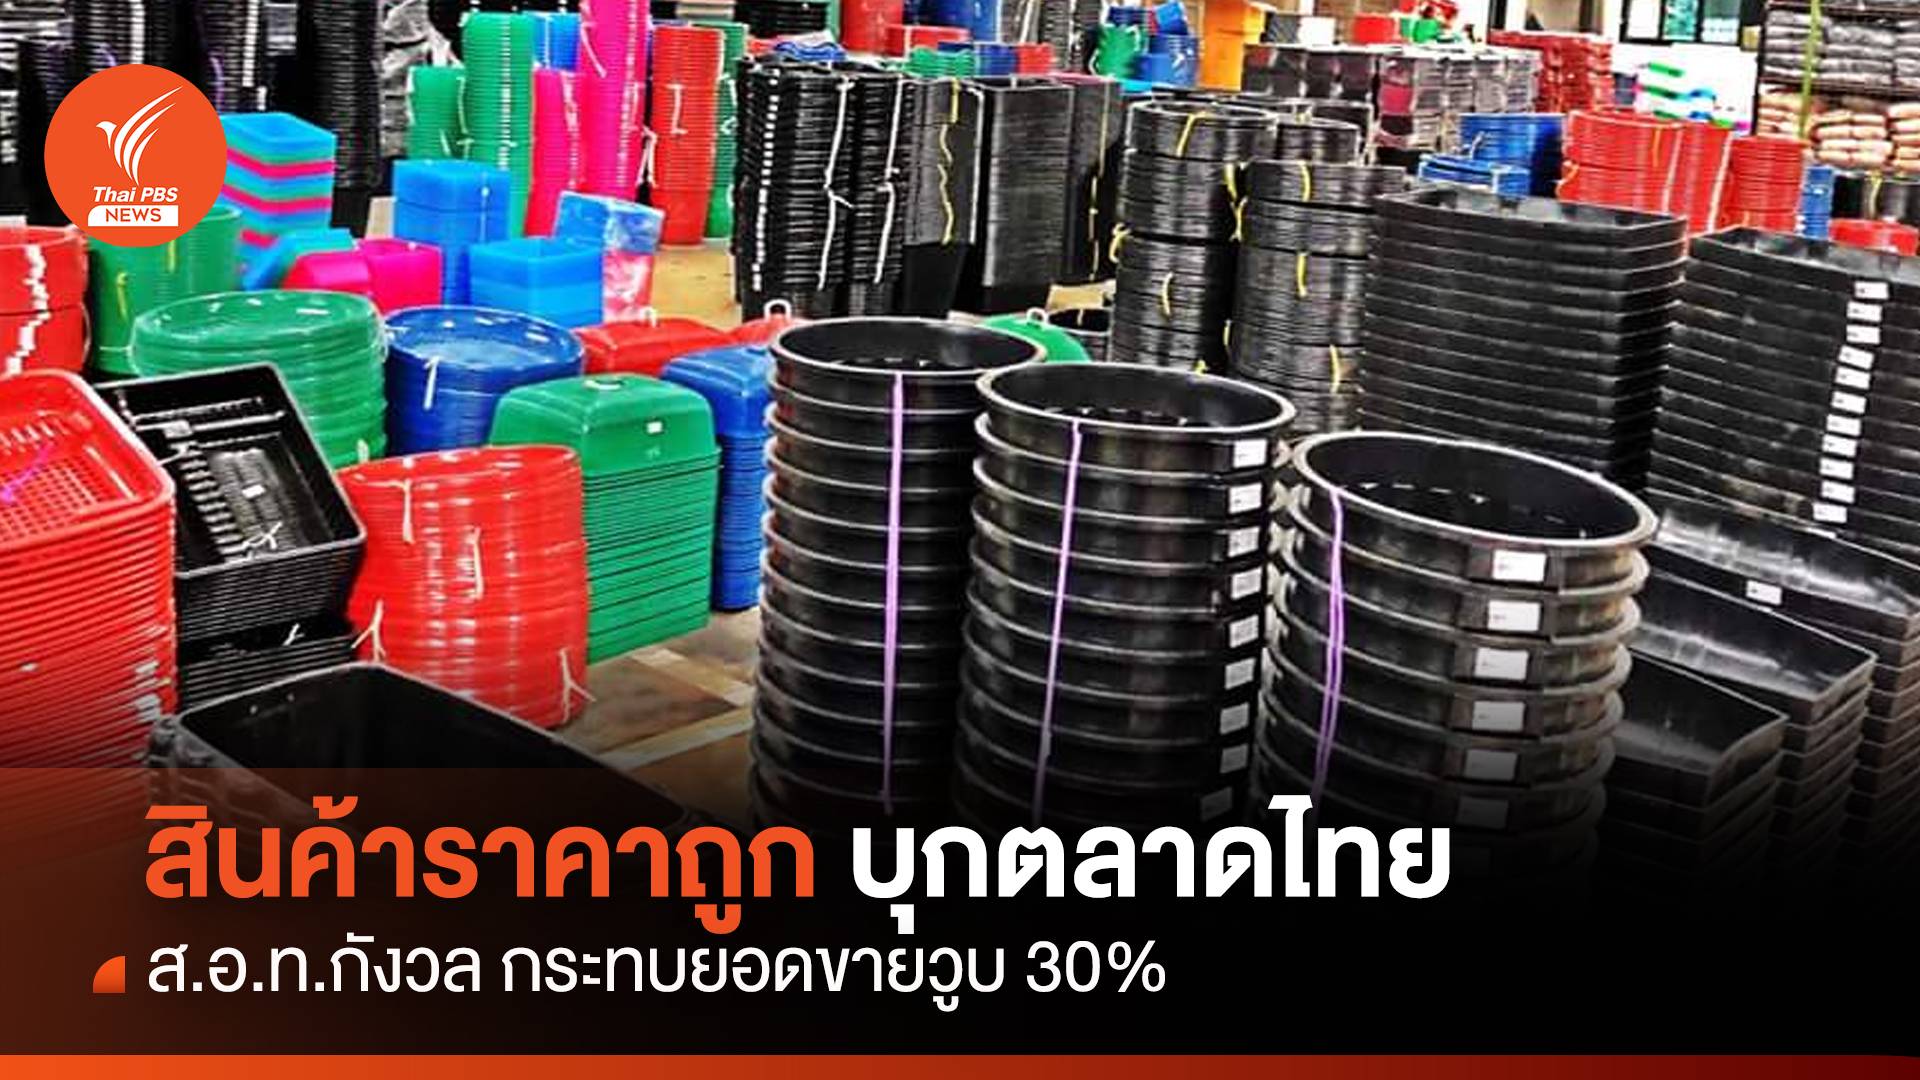  ส.อ.ท. กังวลสินค้าราคาถูกบุกตลาดไทย กระทบยอดขายวูบ 30 %